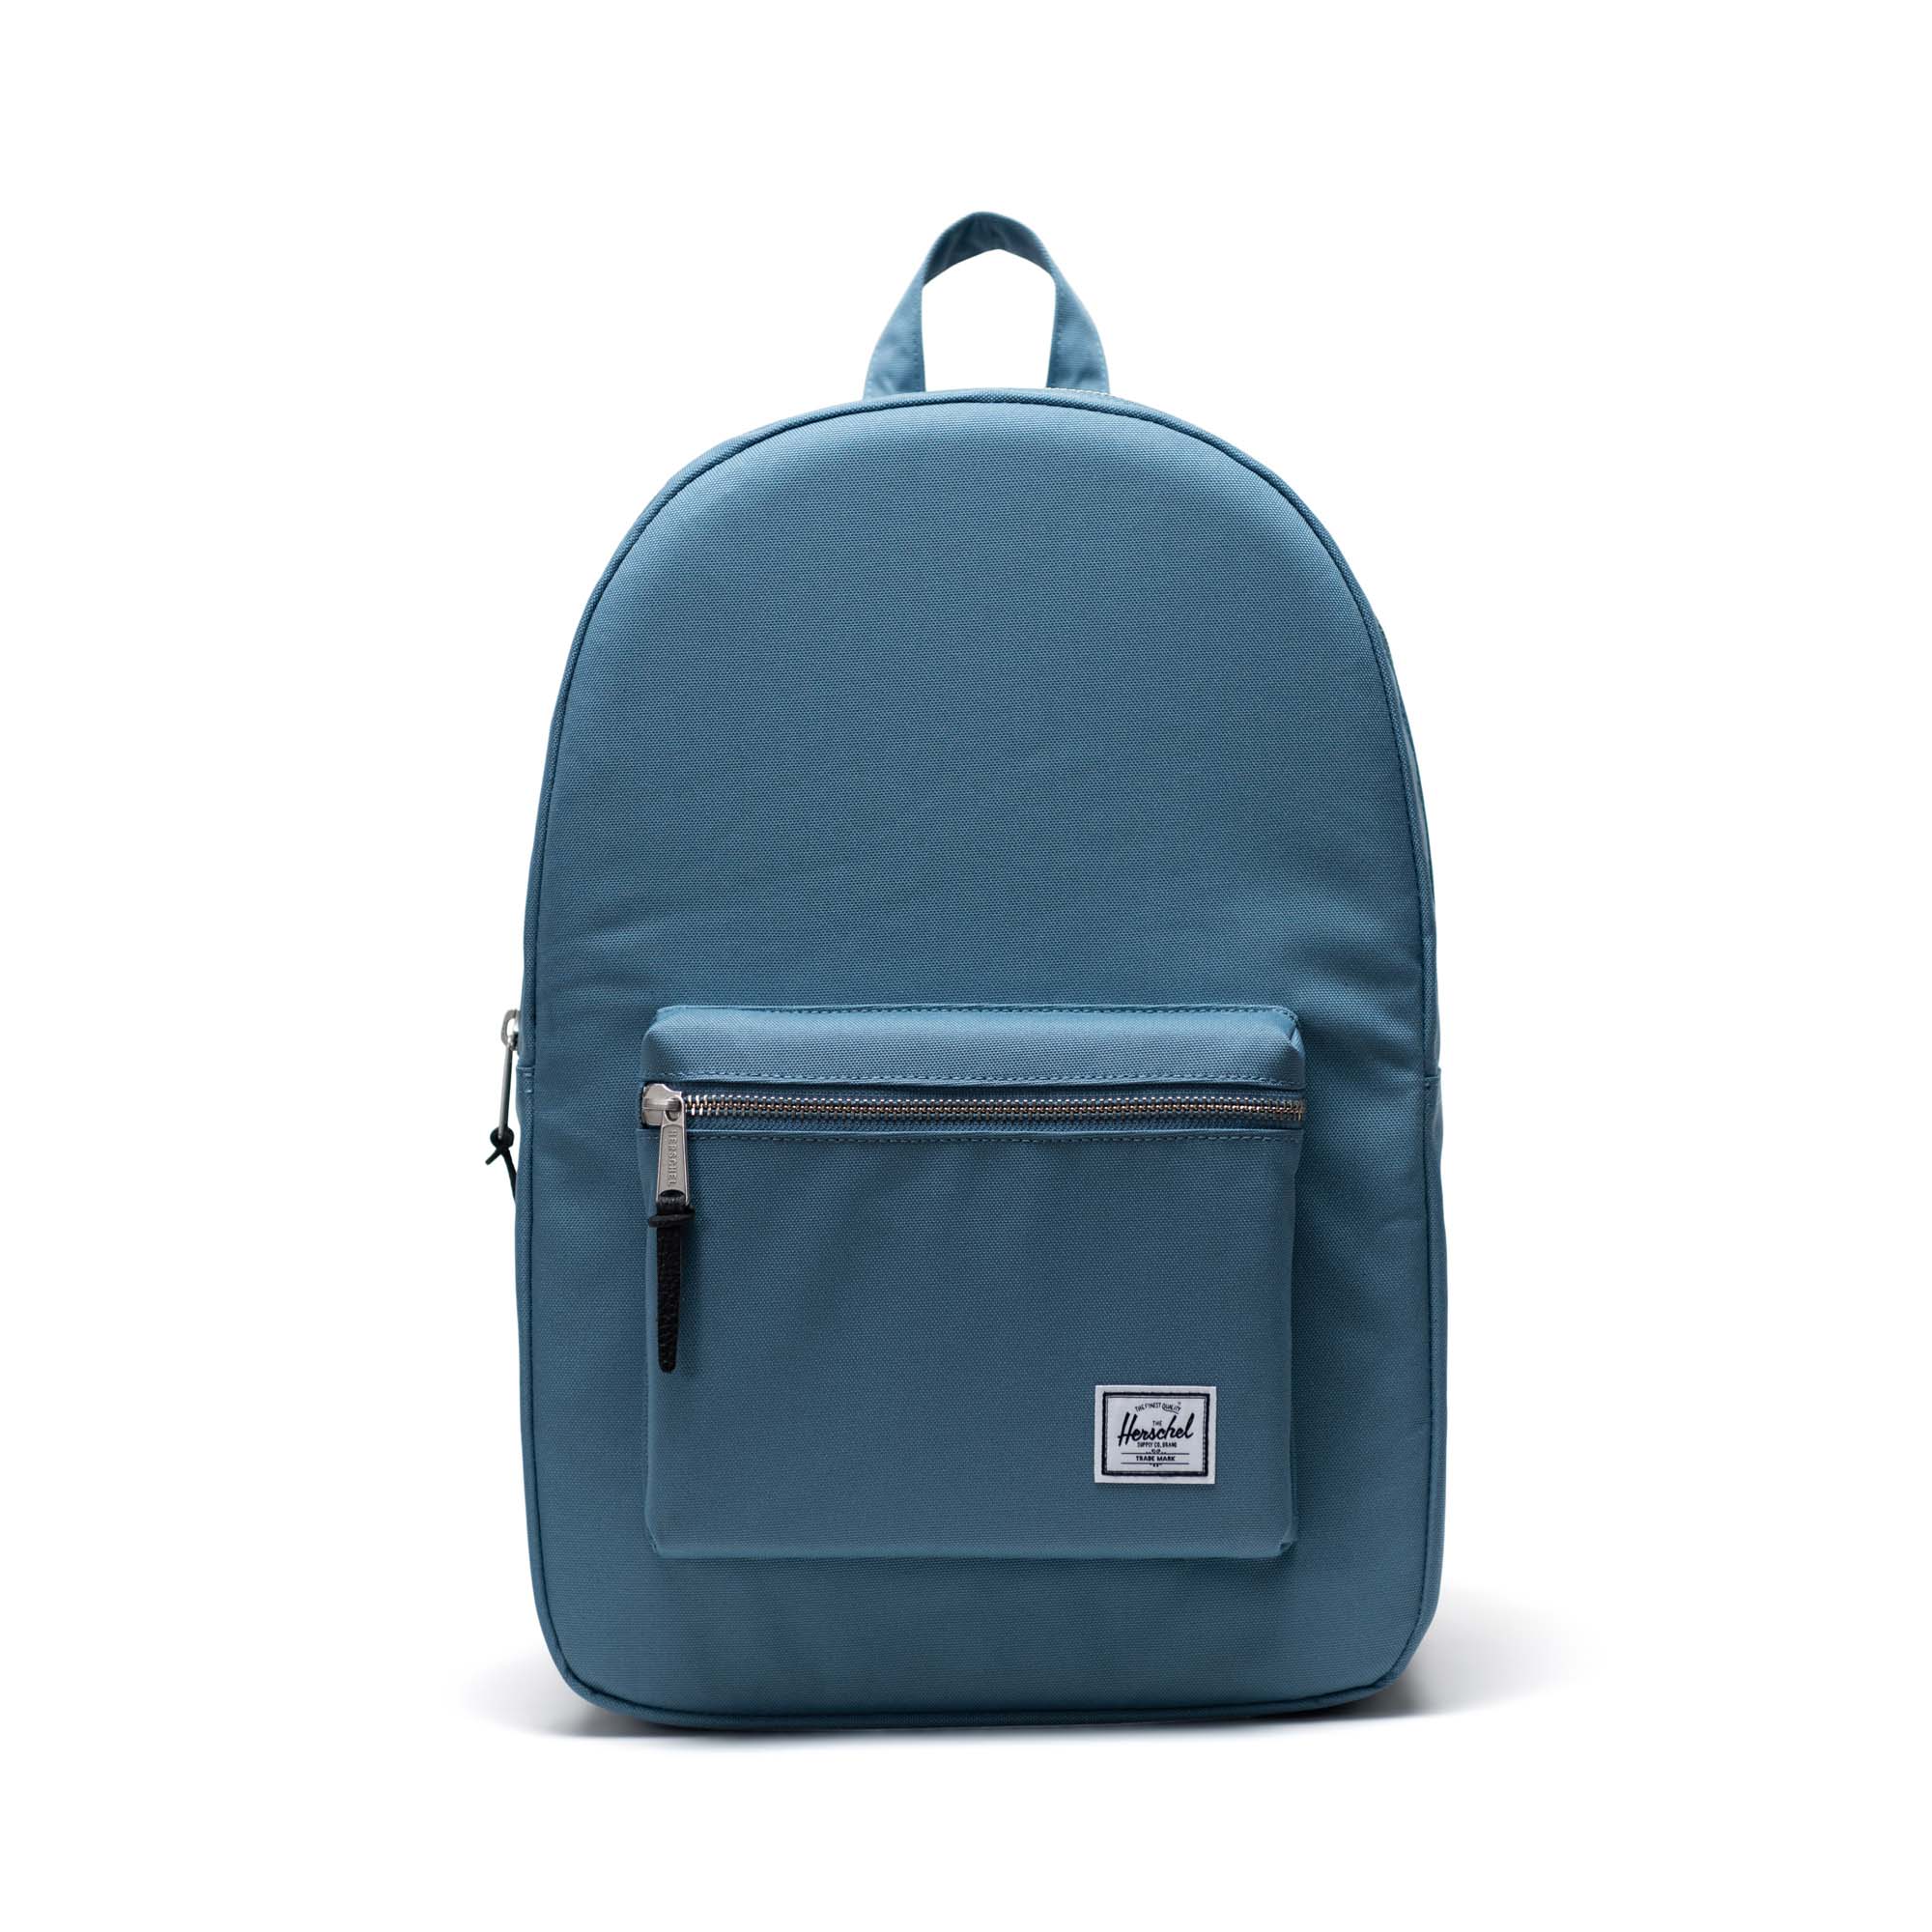 Eastpak Daypack light grey-blue casual look Bags Backpacks 